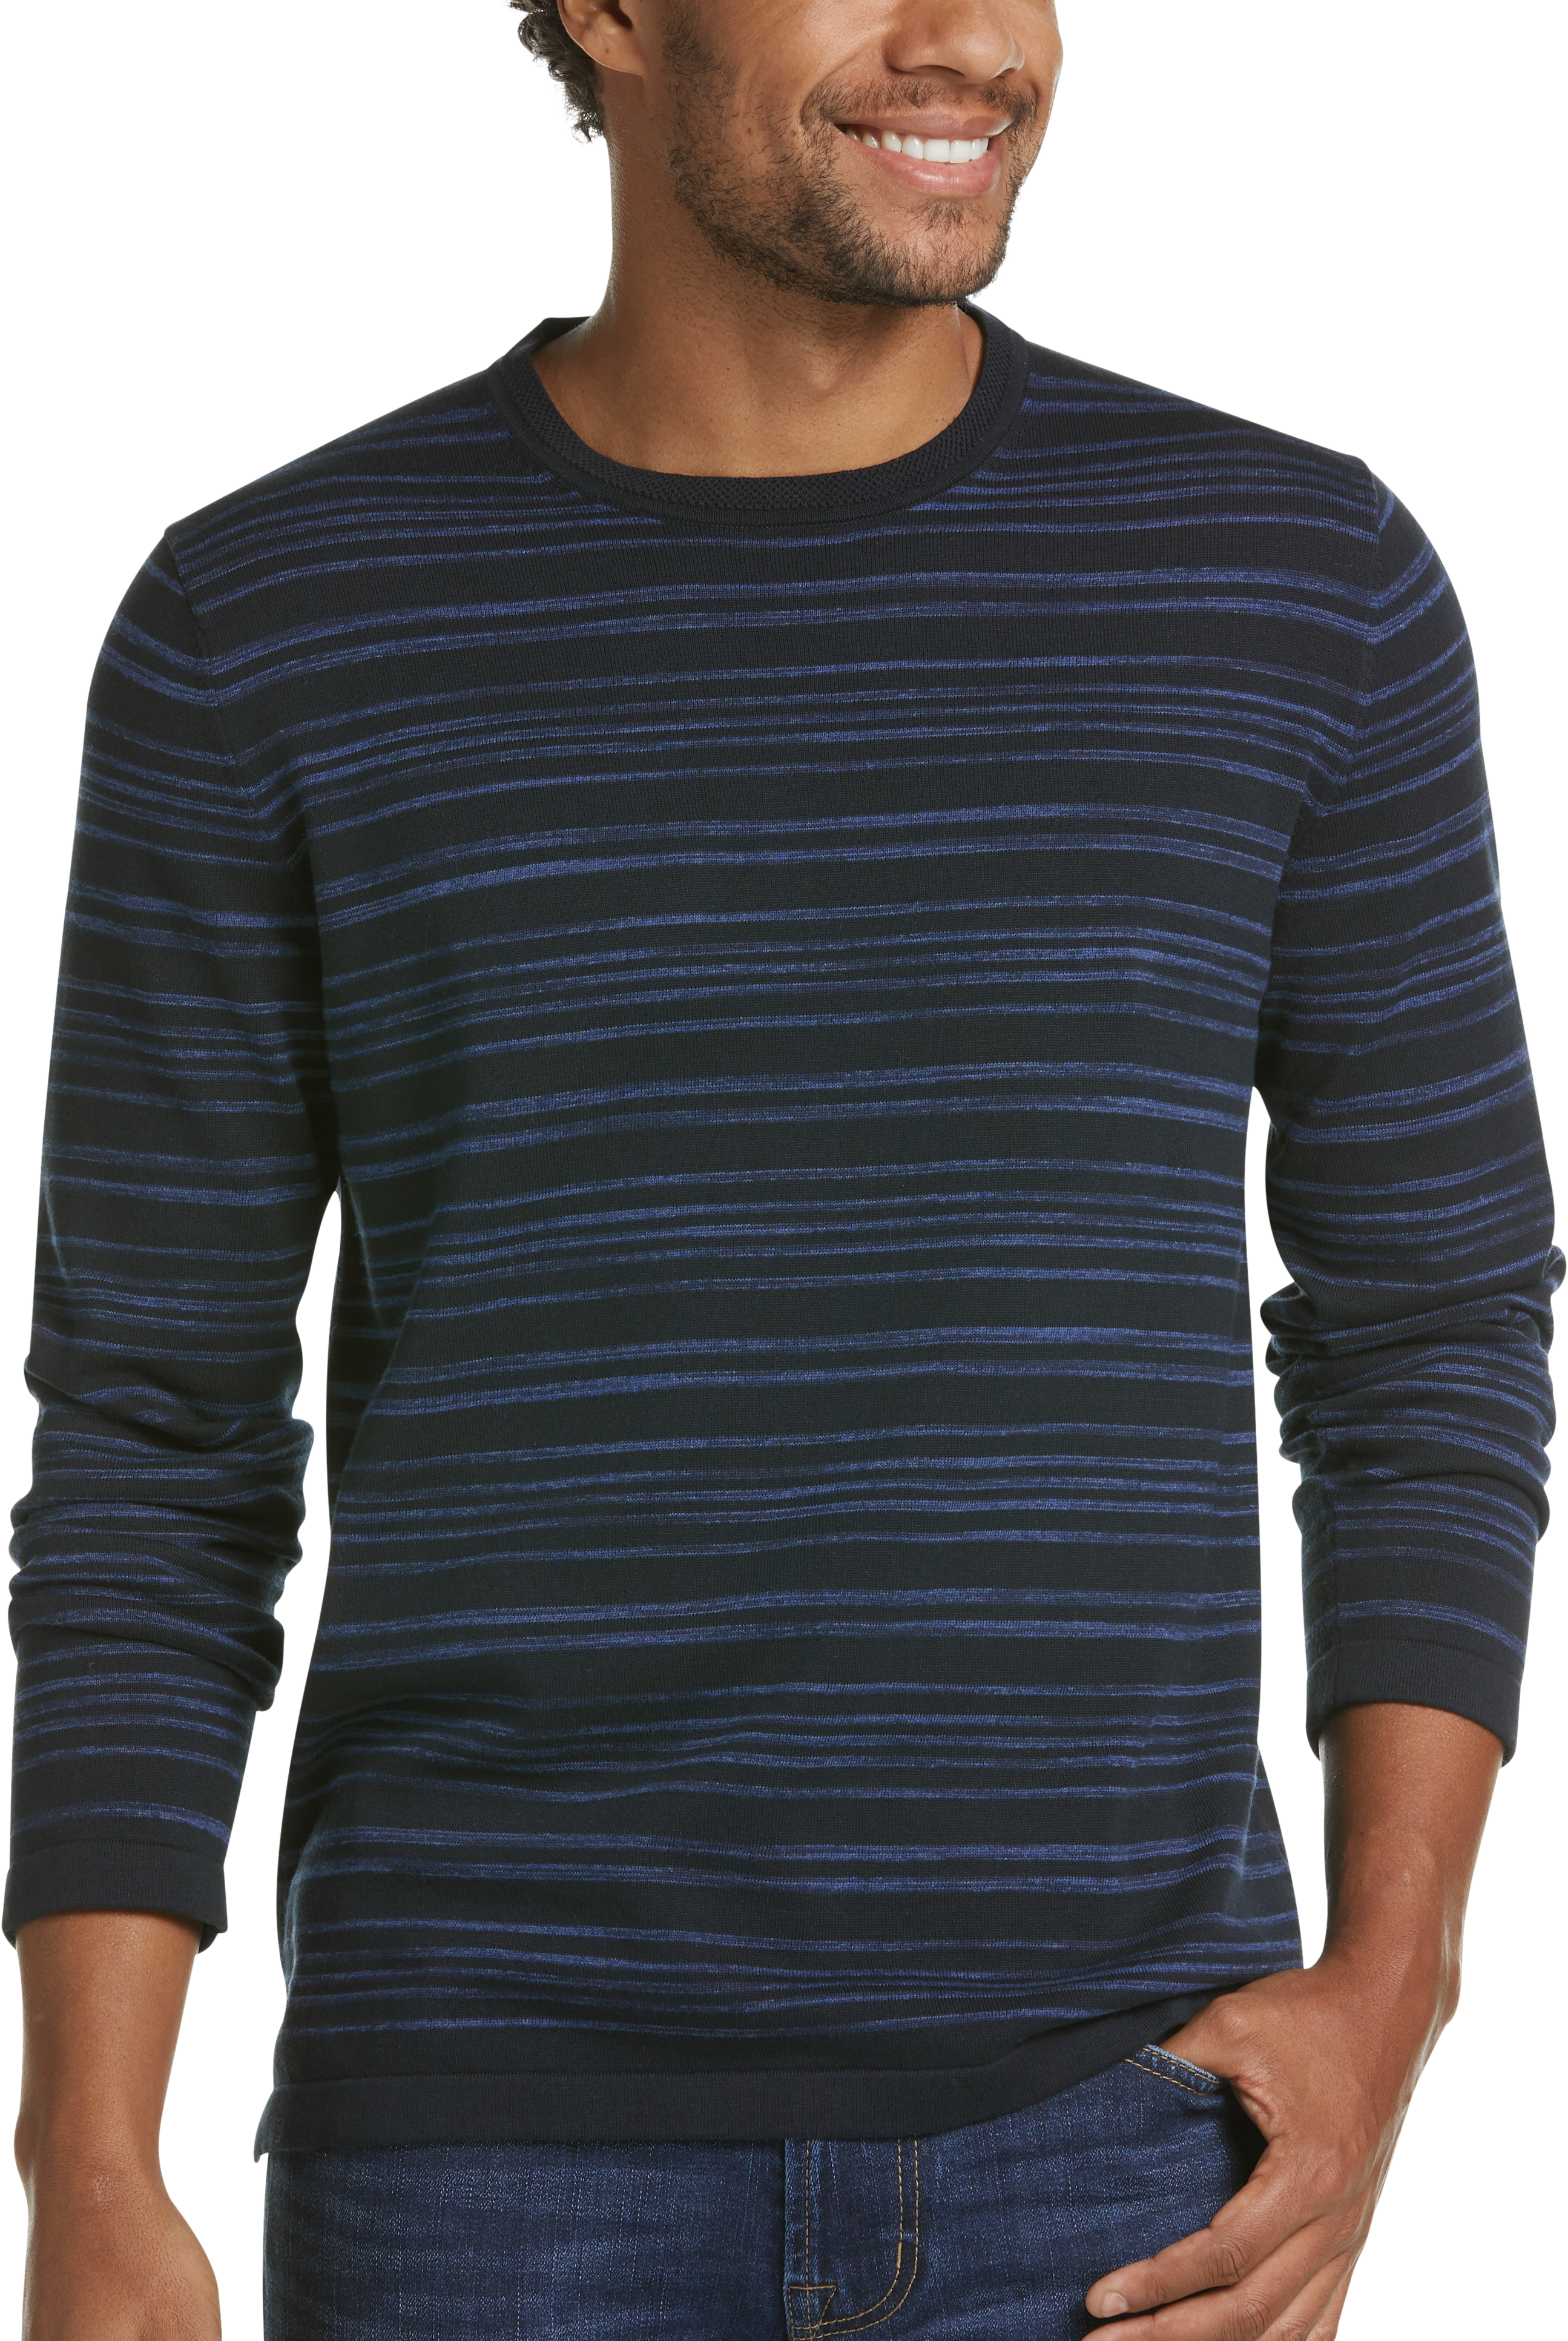 JOE Joseph Abboud Navy Space Dye Stripe Slim Fit Sweater - Men's Sale ...